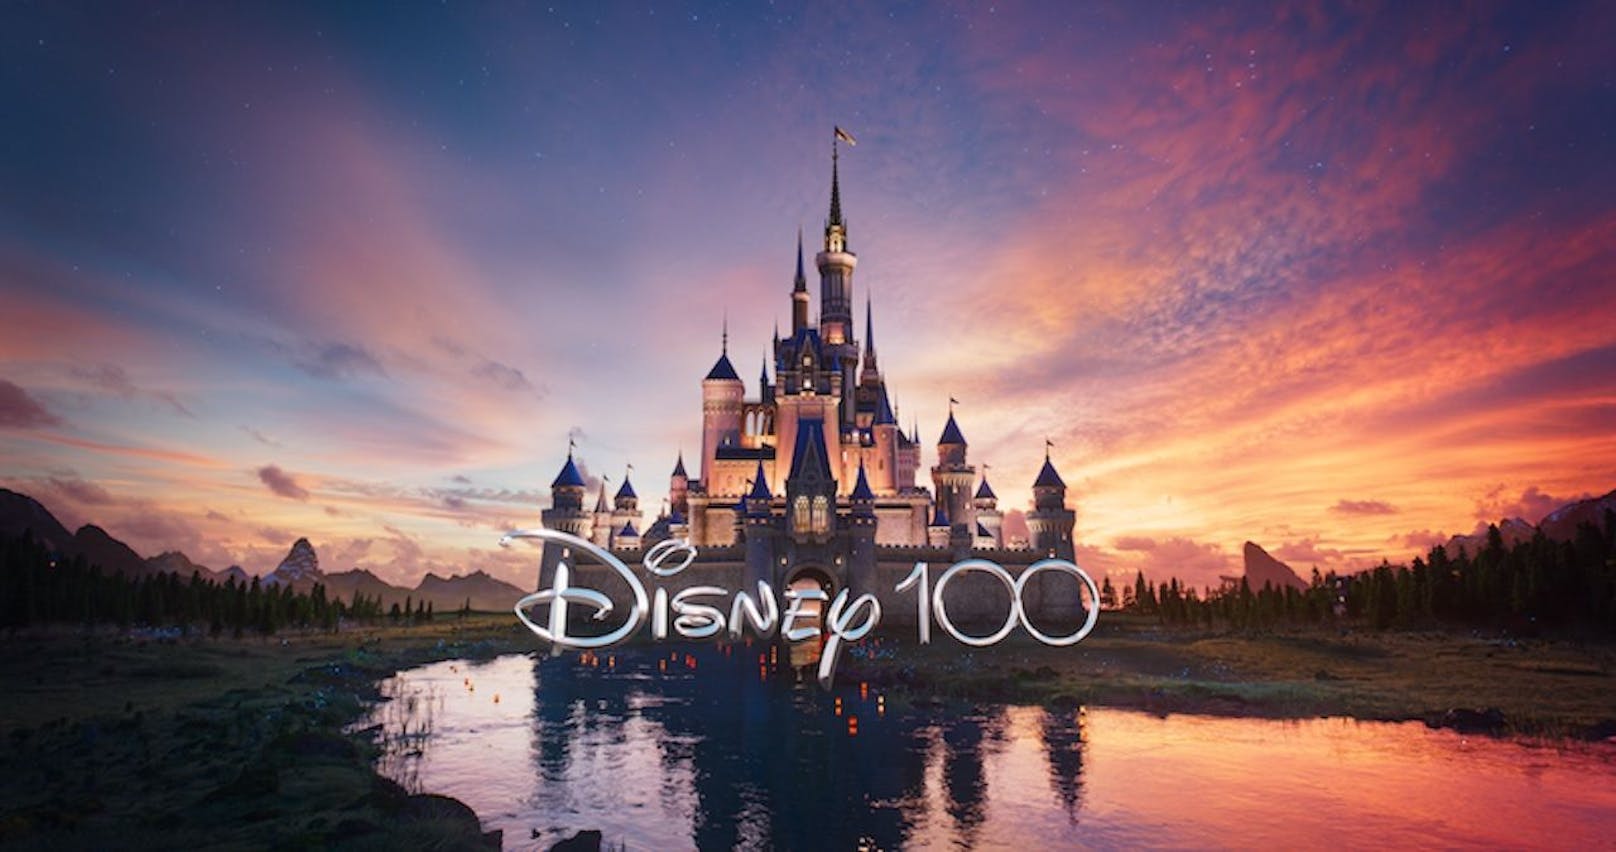 Disney100 - Märchenschloss